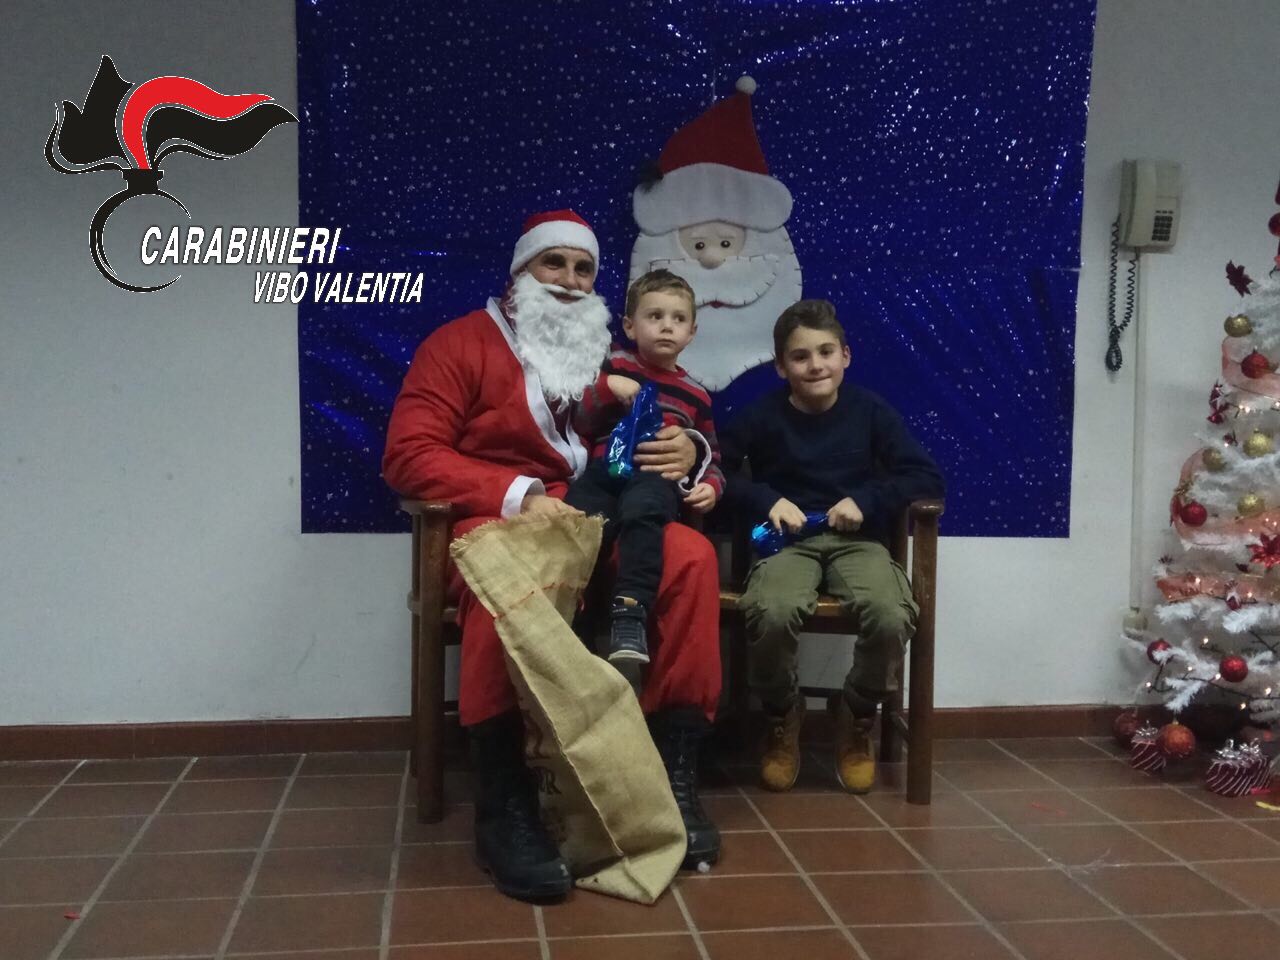 Video Babbo Natale Per Bambini.Si Cala Dal Tetto Portando Doni Ai Bambini Carabiniere Babbo Natale In Calabria Foto E Video Stretto Web